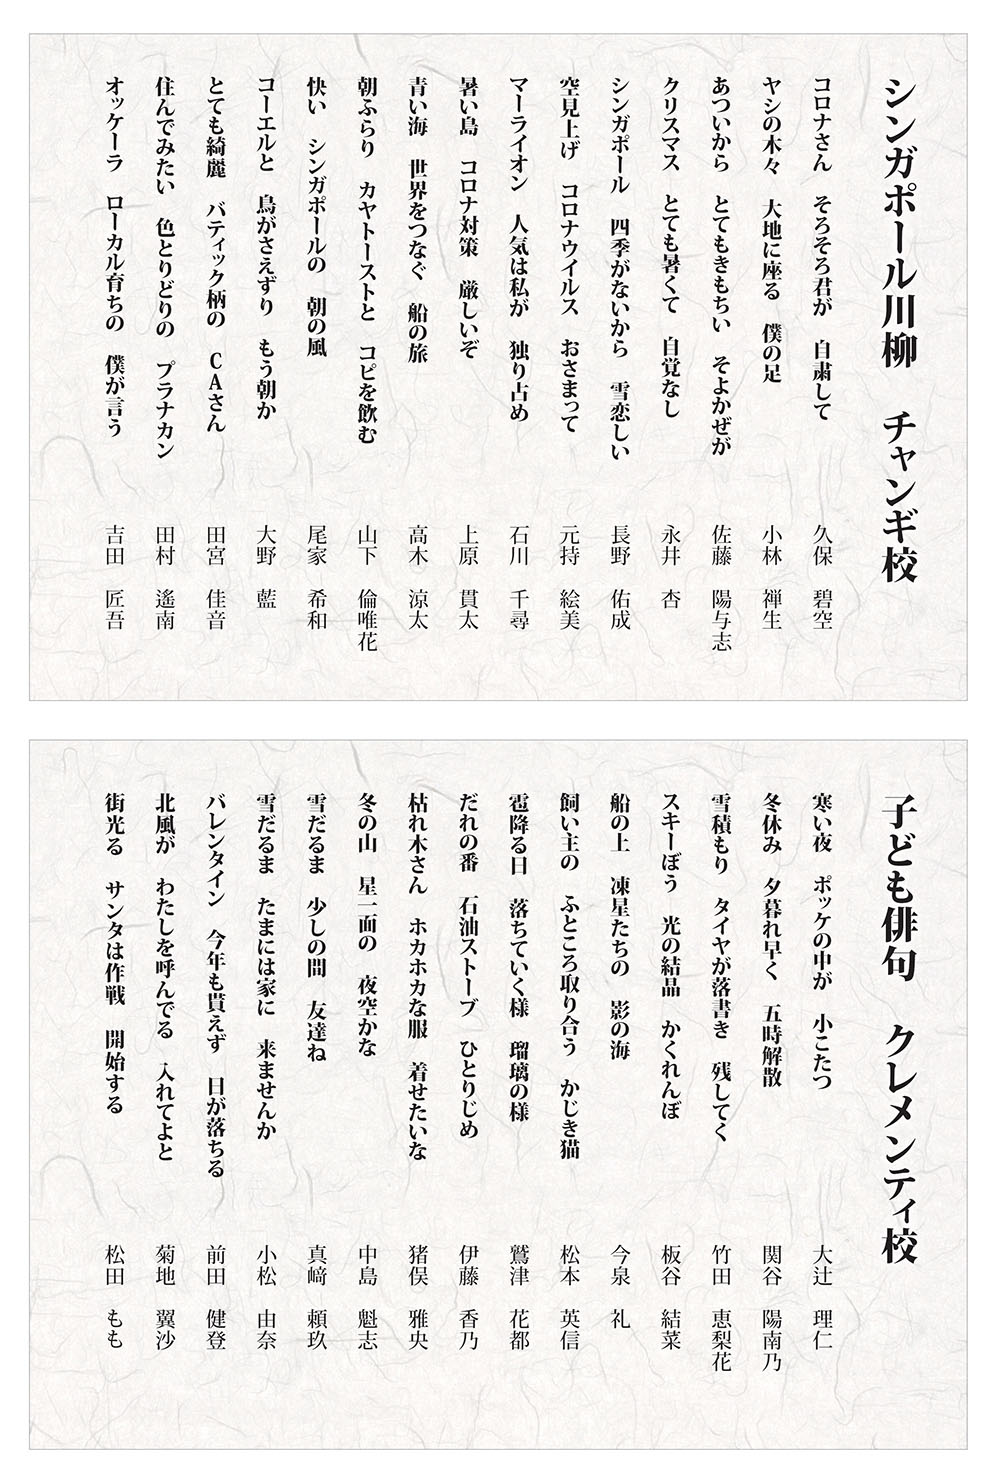 kodomo-senryu-haiku-feb-2022.jpg (291 KB)